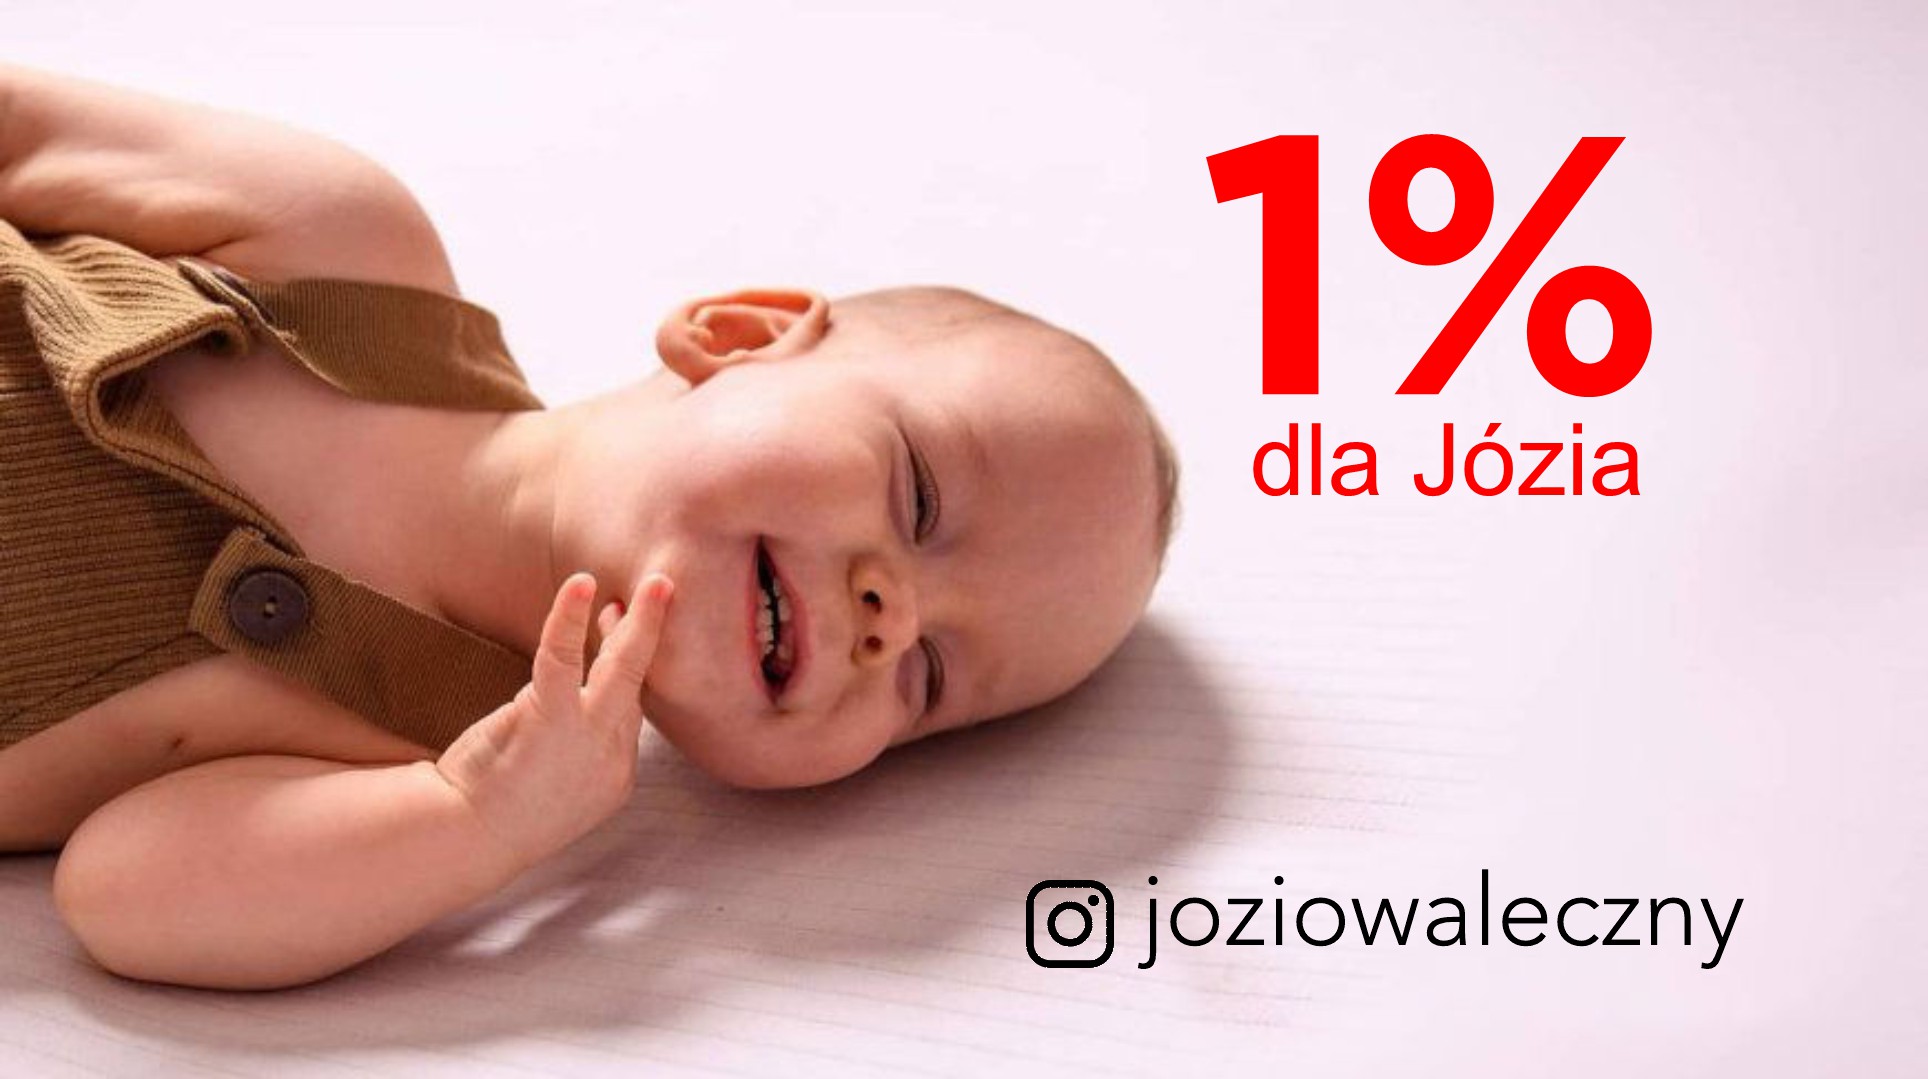 1% dla Józia